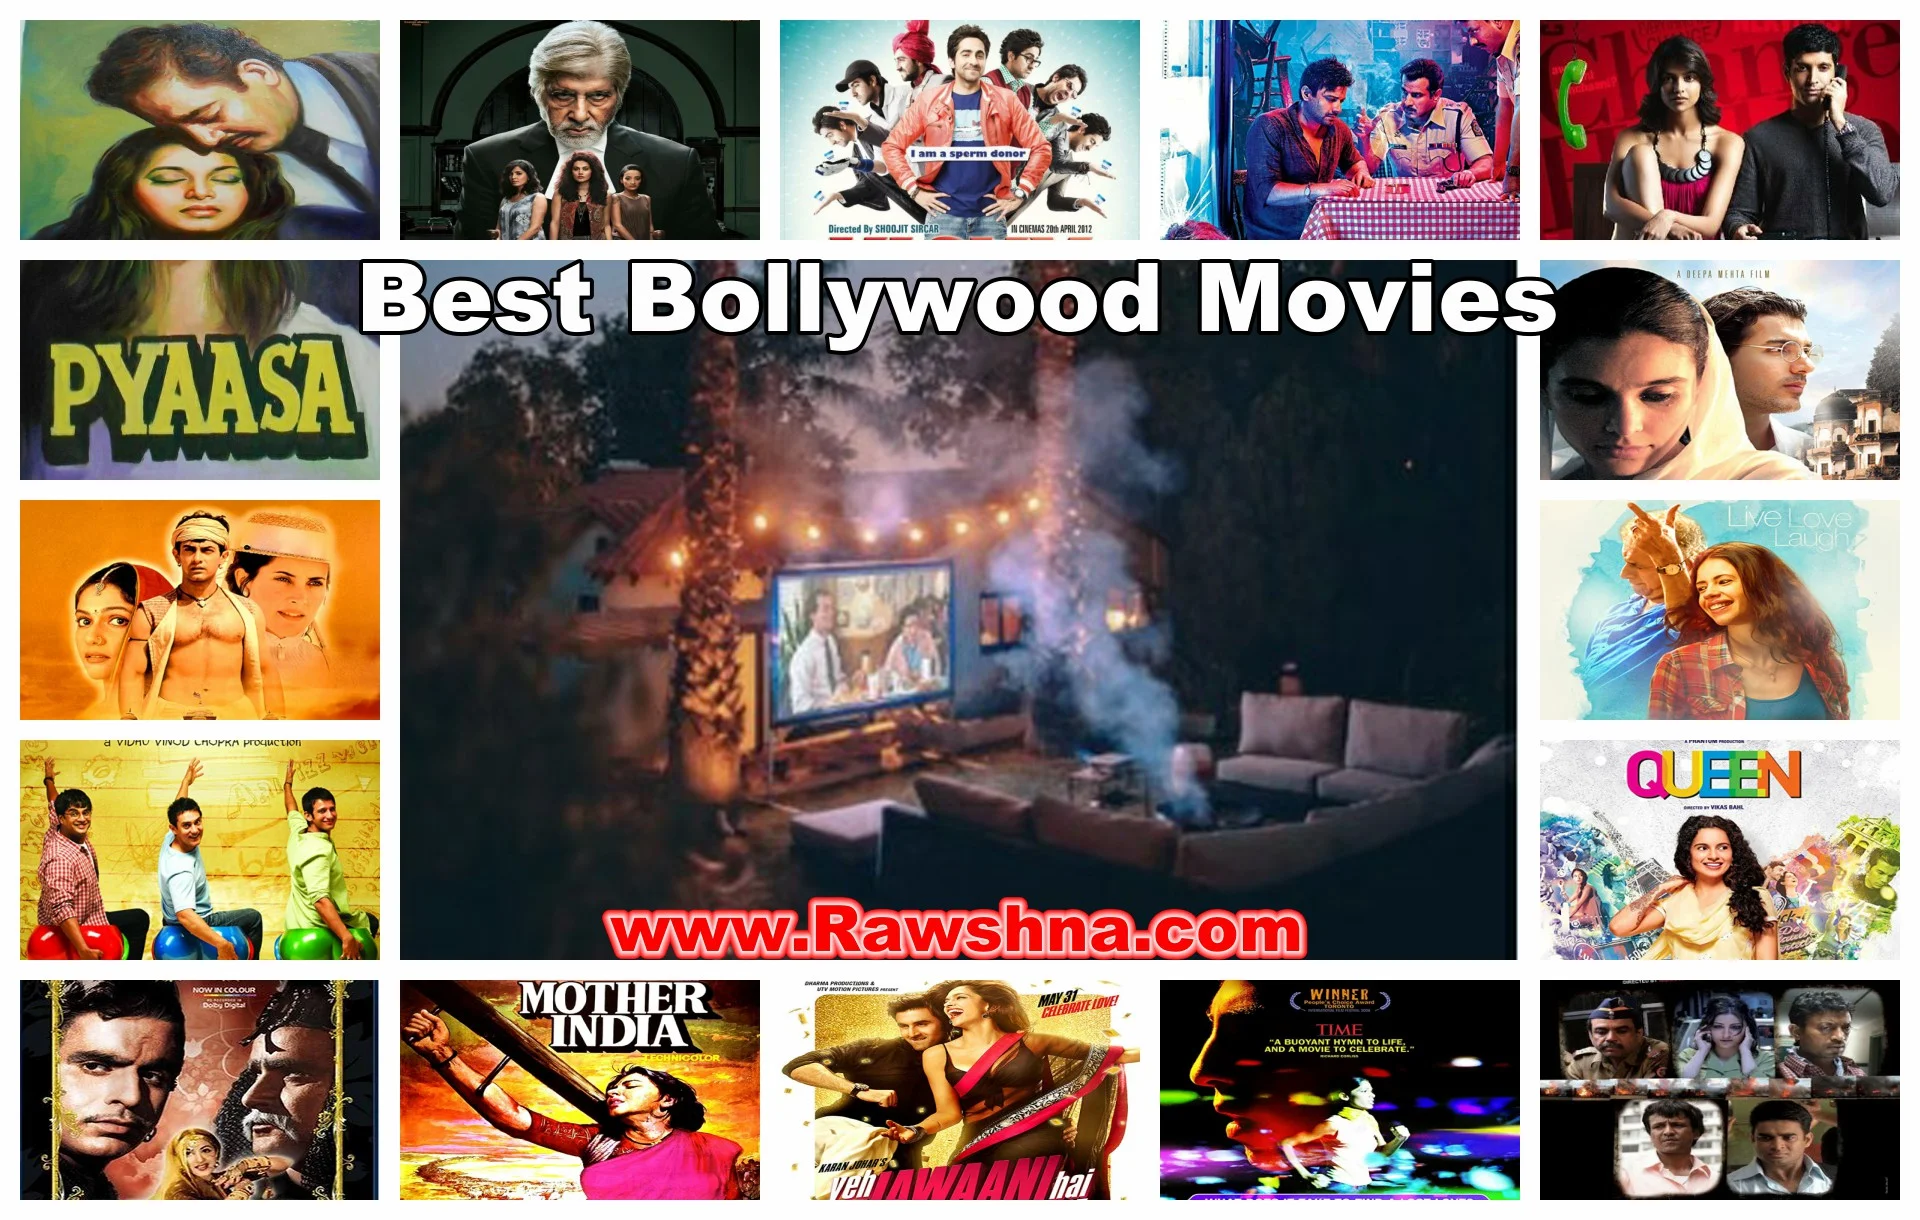 شاهد 15 أفضل افلام هندية على الاطلاق  شاهد قائمة أفضل 15 افلام هندية على مر التاريخ  معلومات عن الأفلام الهندية | Bollywood Movies